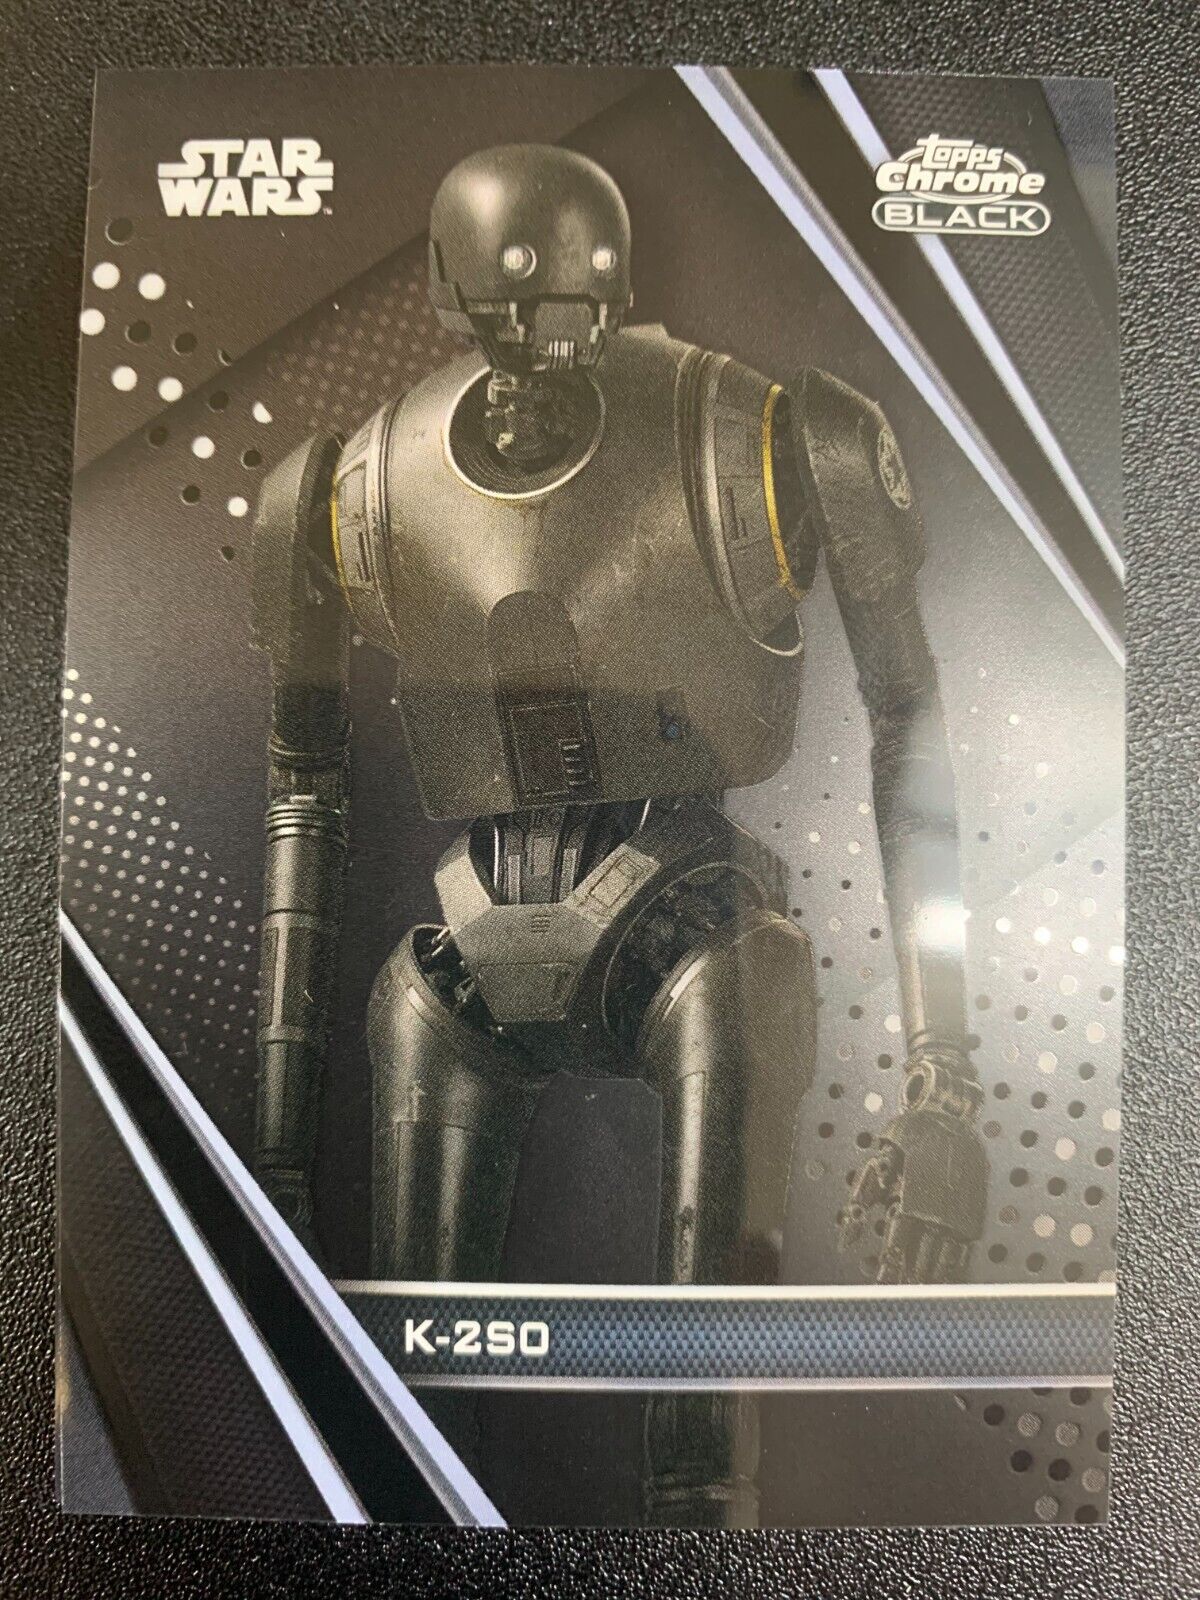 2020 Topps Star Wars Chrome Black K-2SO Base Card #26